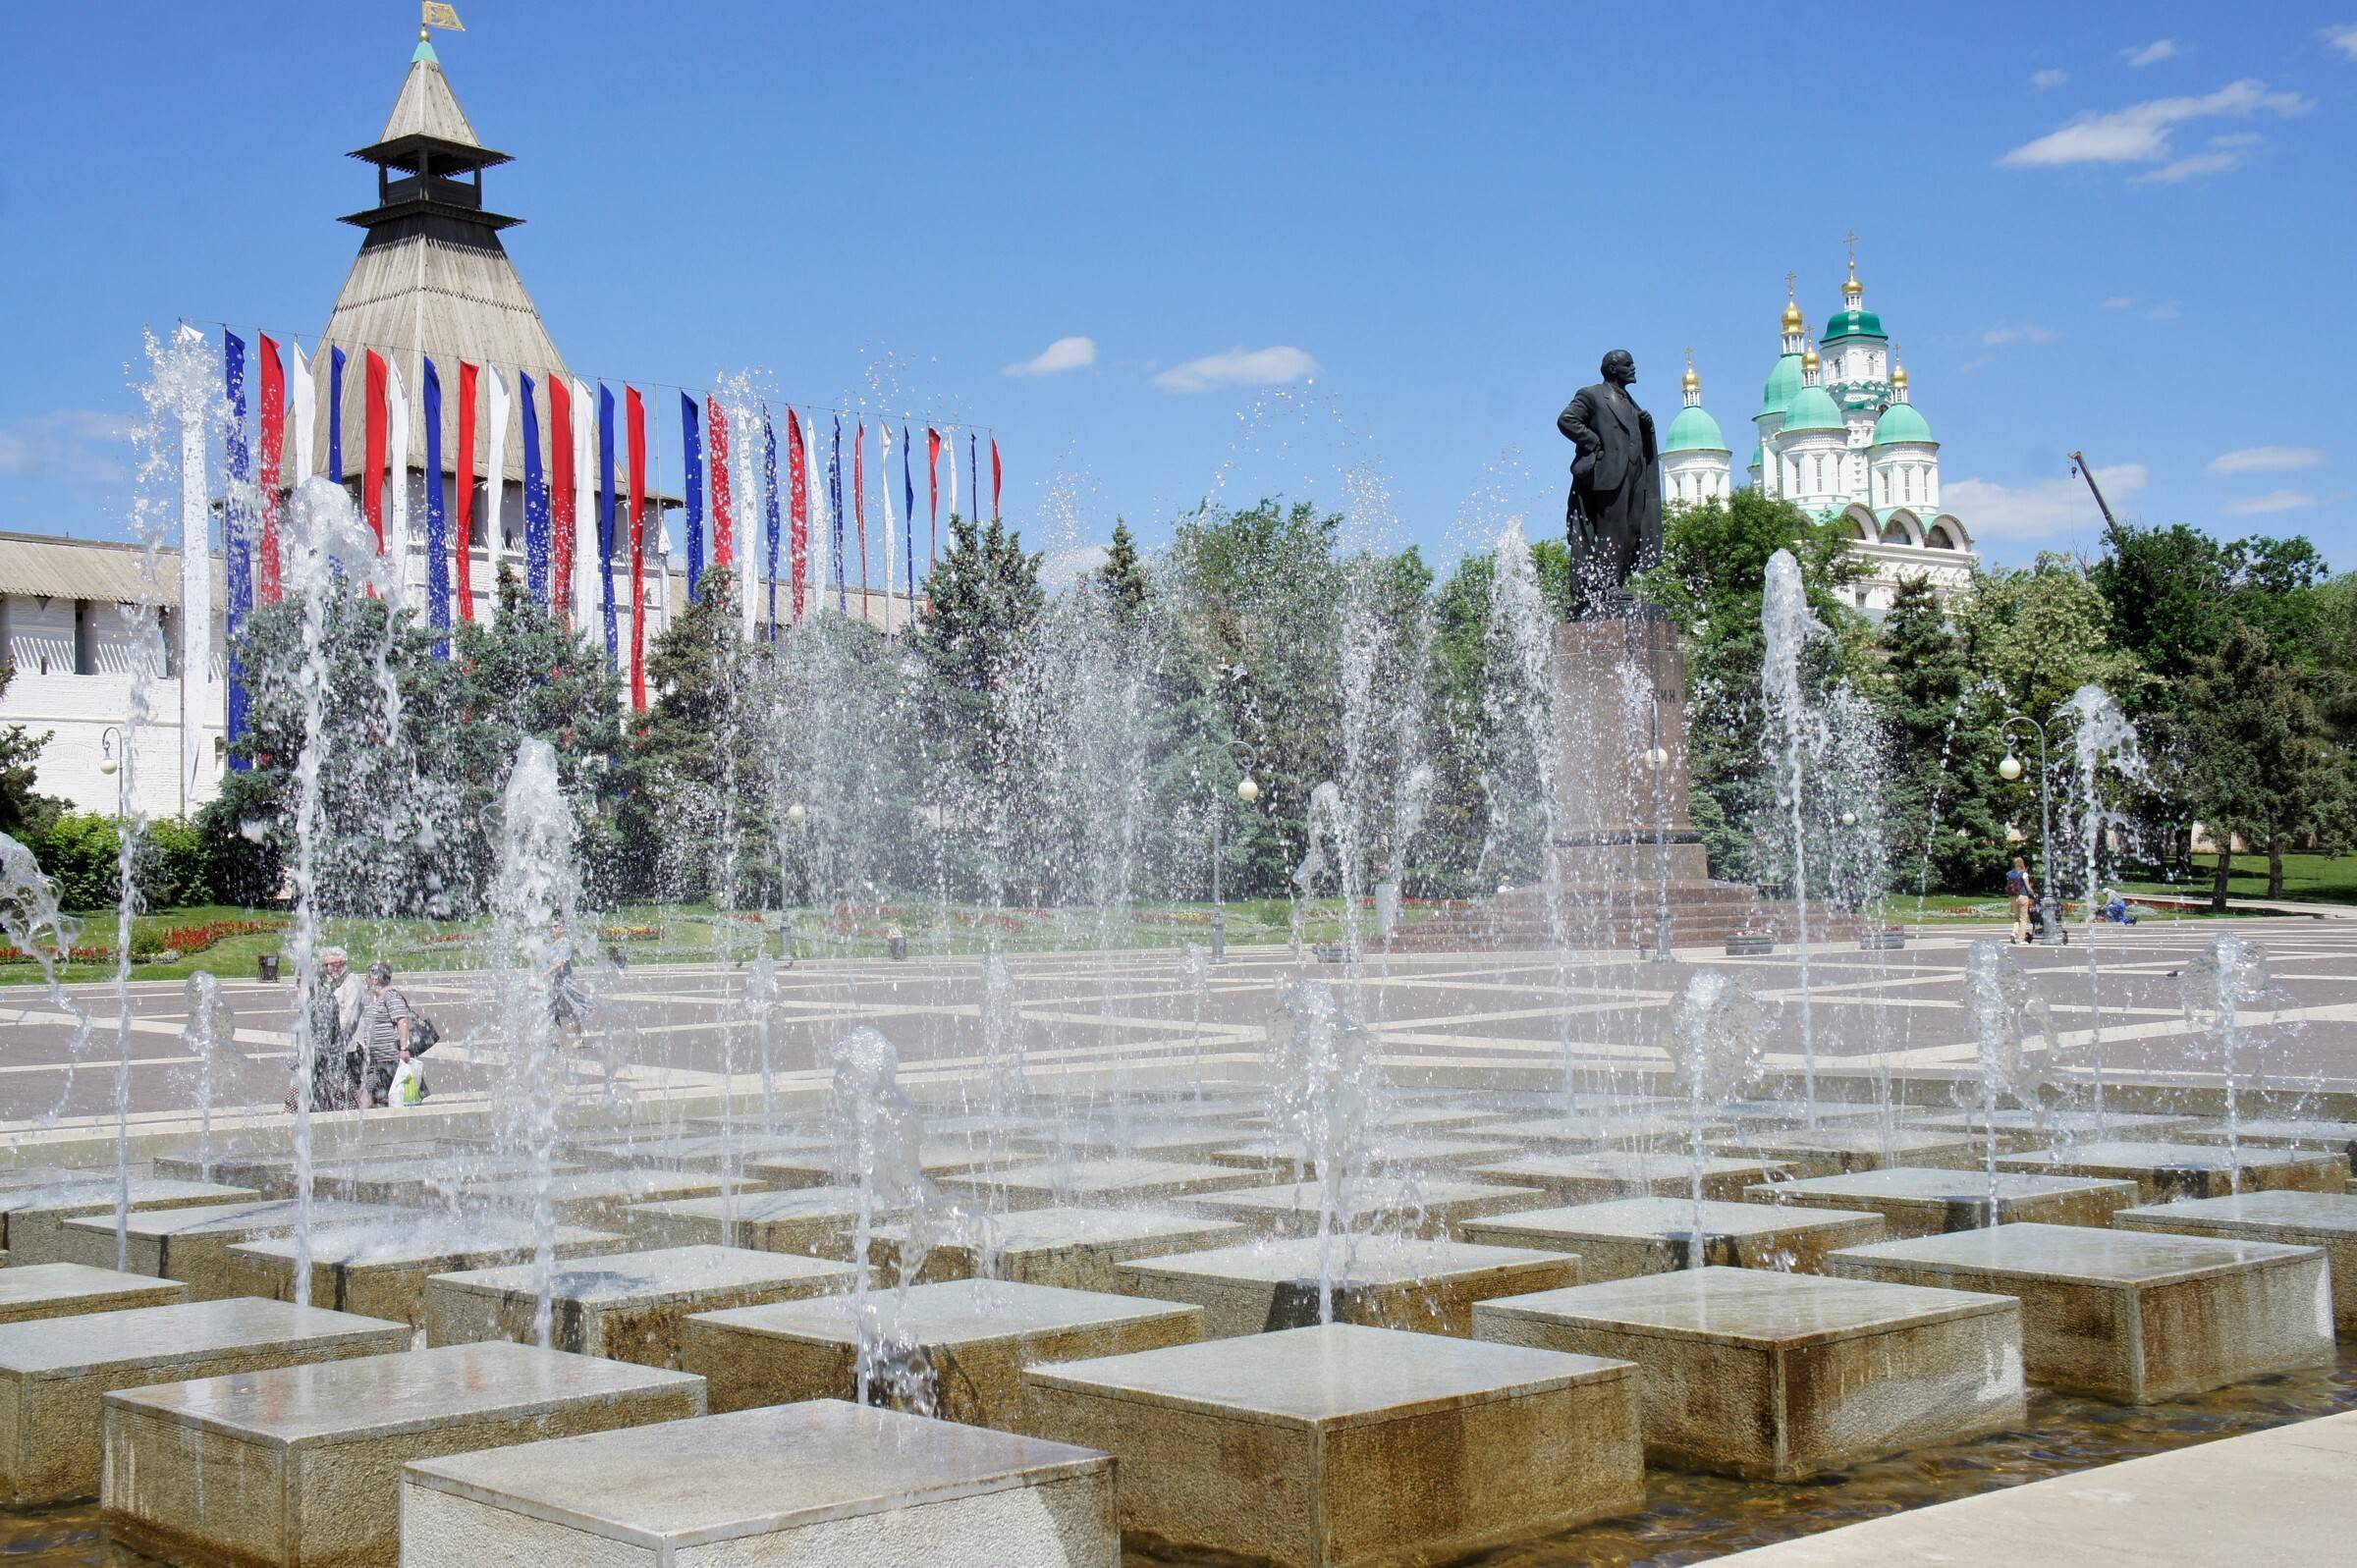 Бердск: куда сходить и что посмотреть, достопримечательности и красивые места